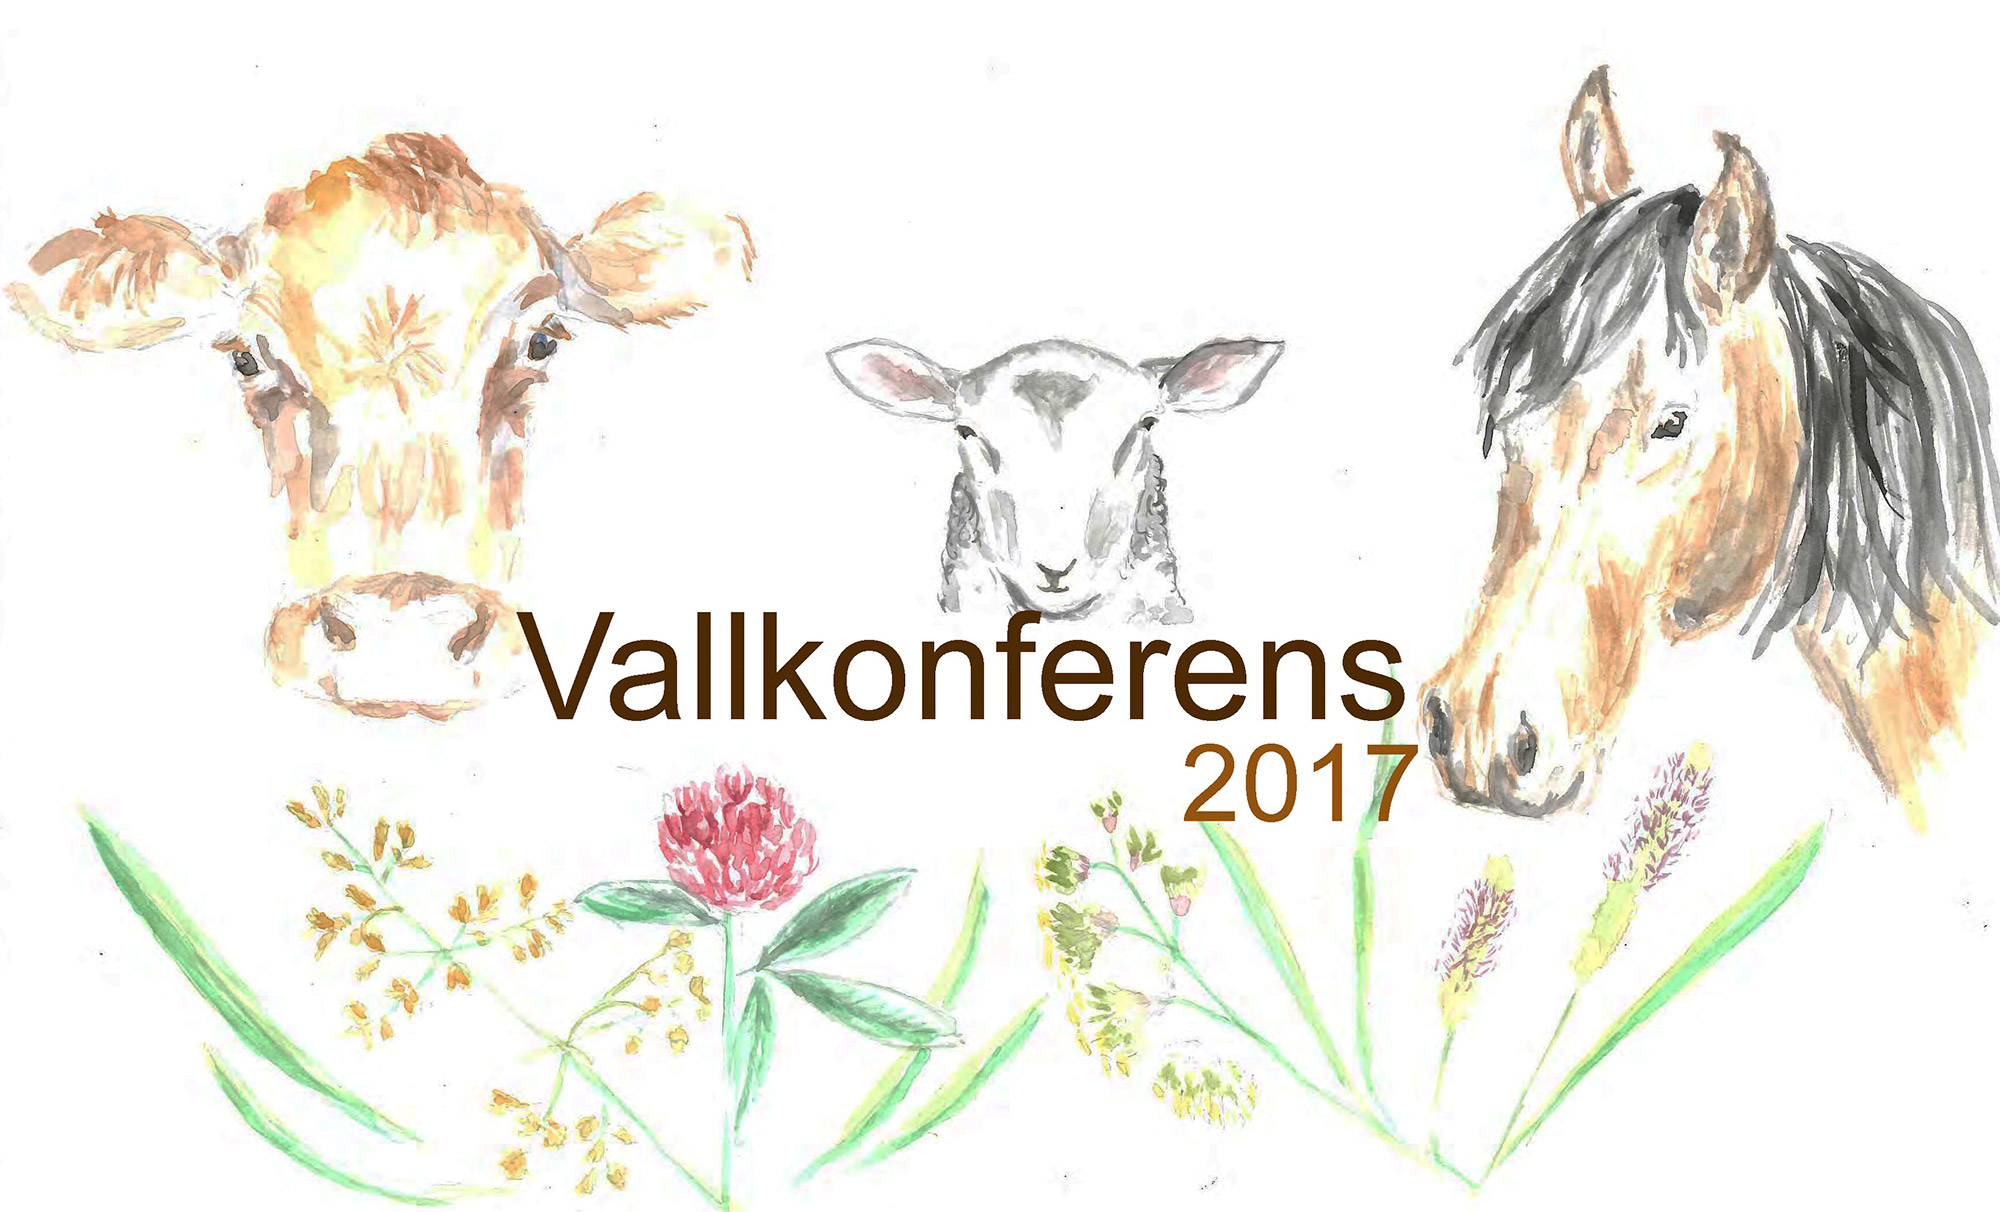 Vallkonferen 2017 logotyp. Bild.